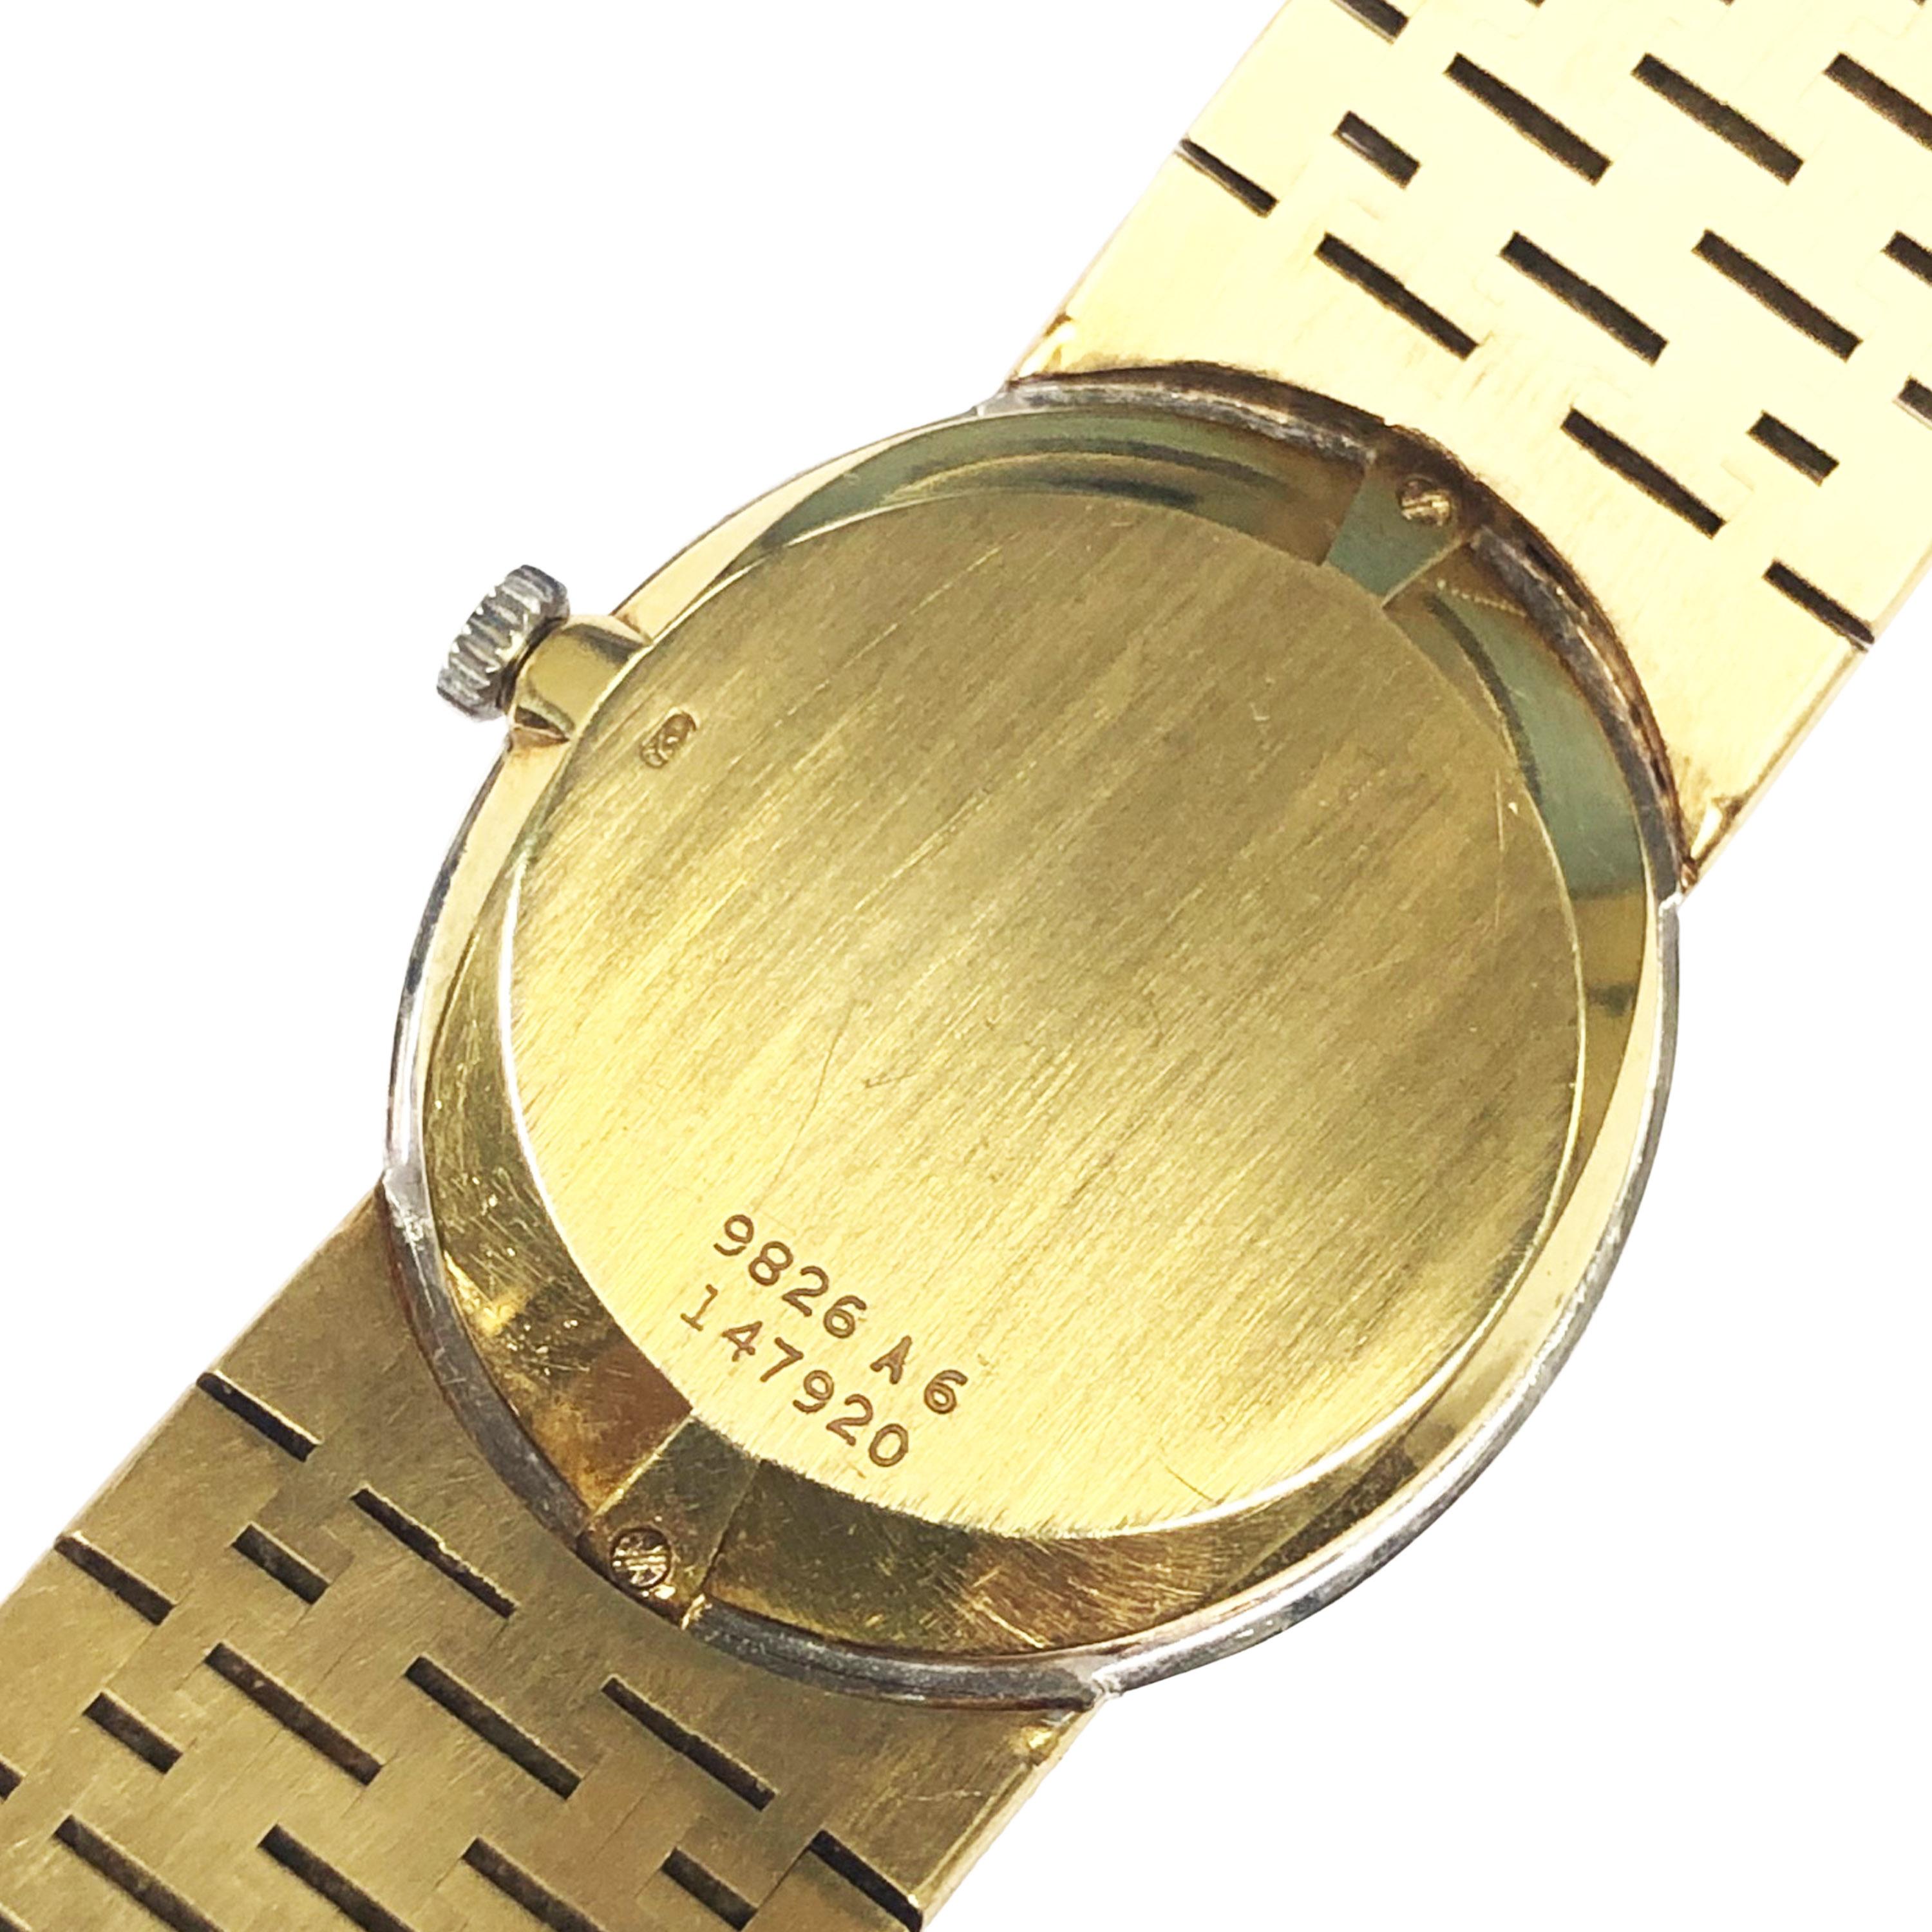 opal dial watch